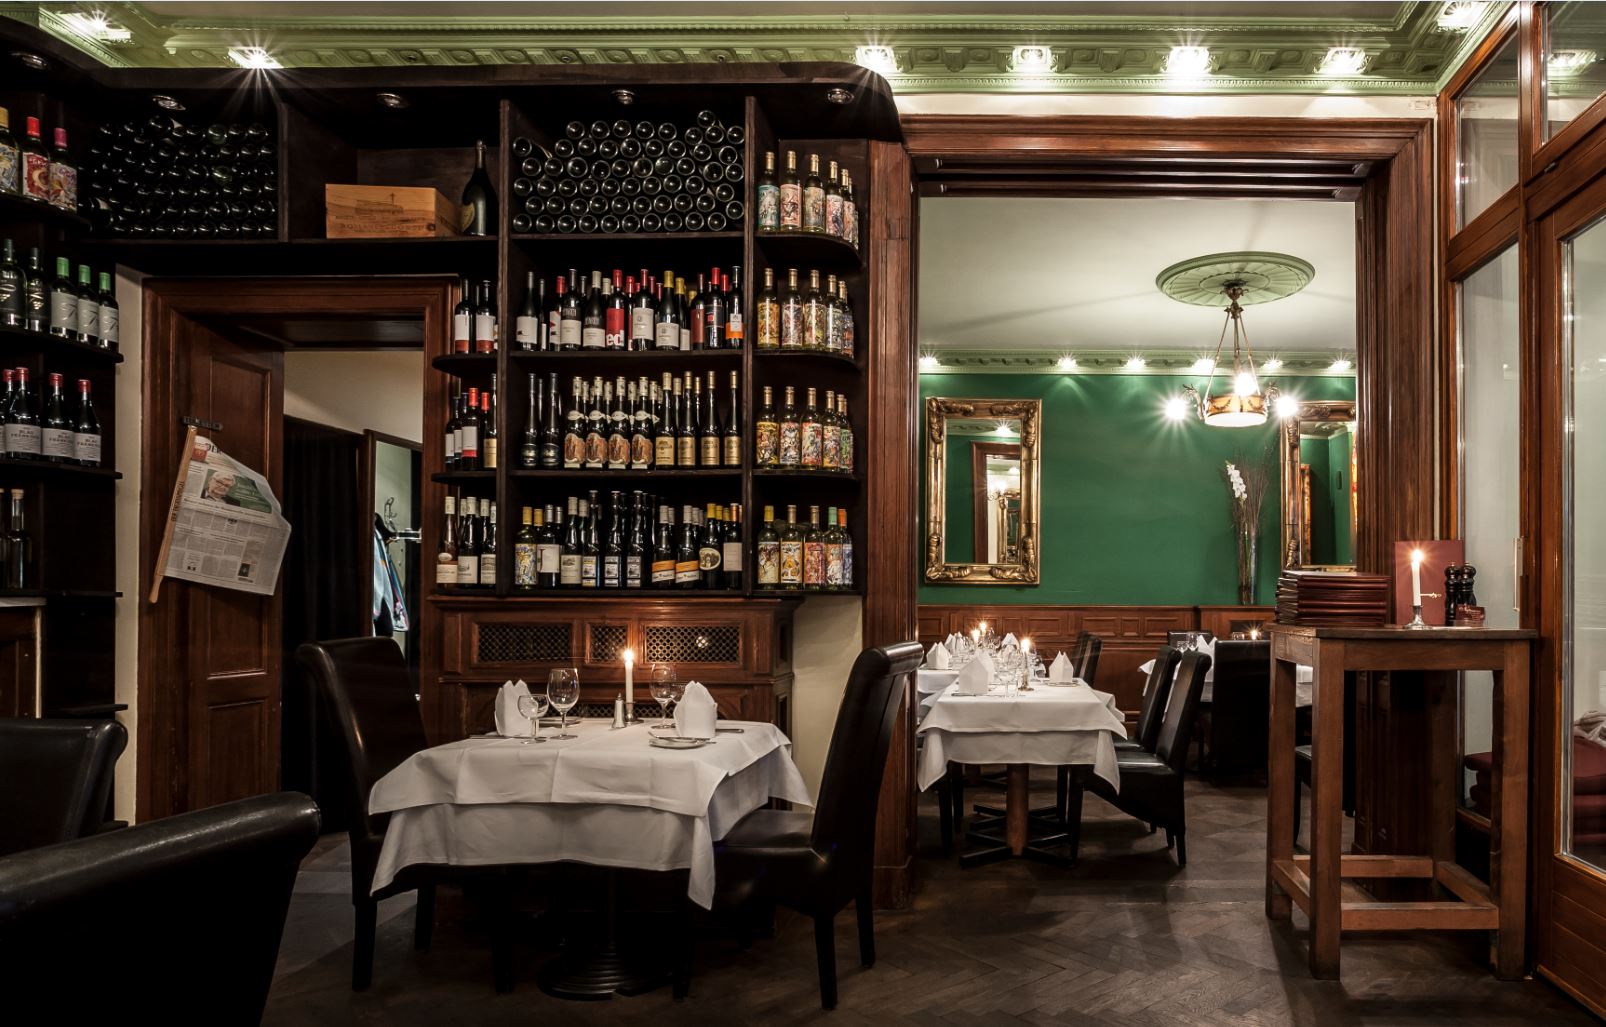 Österreichische Küche in Berlin findet man im Restaurant Nußbaumerin, das auch einen Heurigen betreibt. Foto: White Kitchen